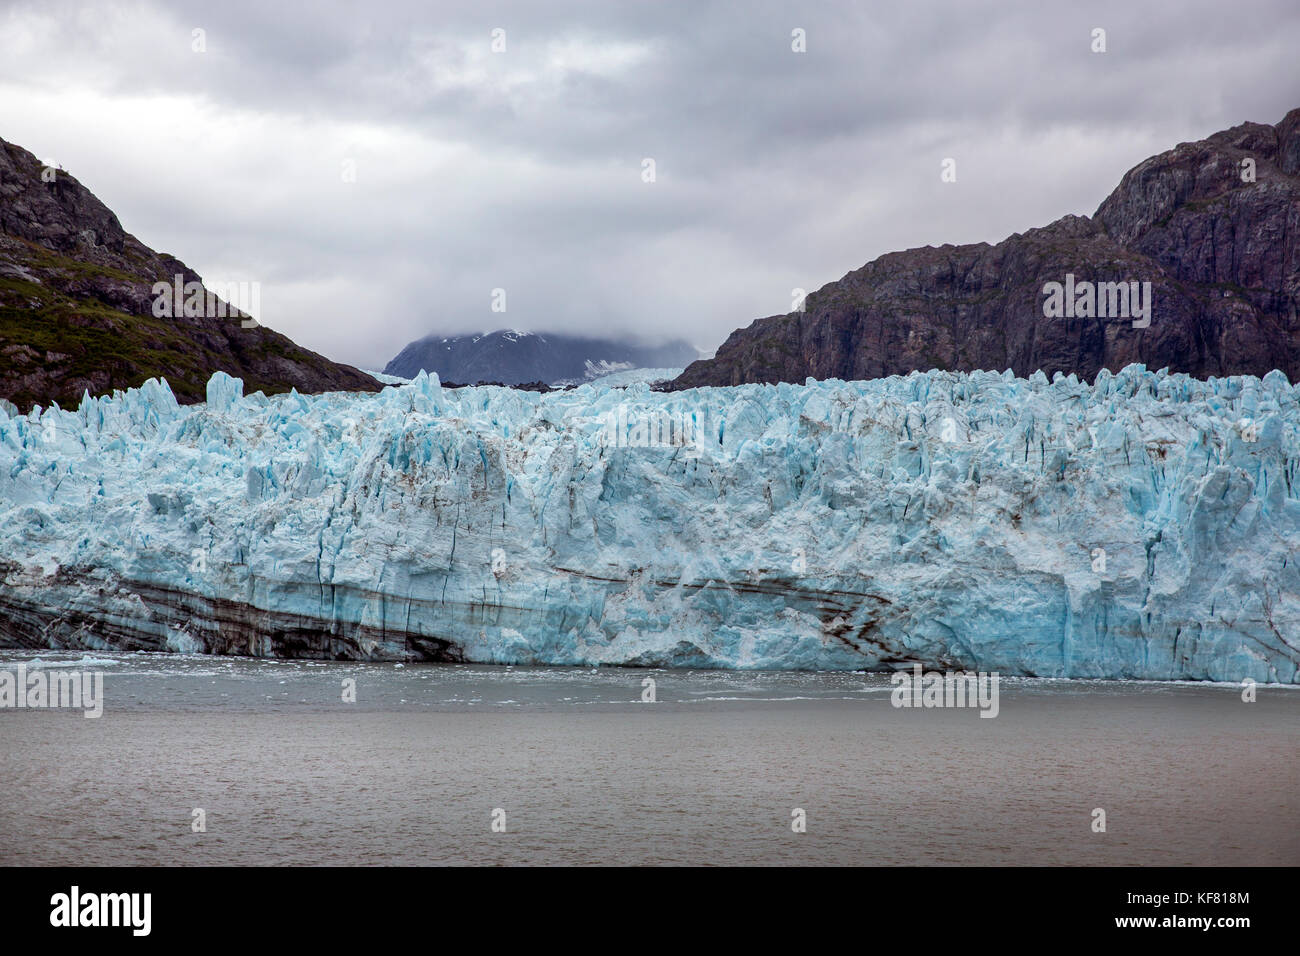 Stati Uniti d'America, Alaska Glacier Bay, viste mozzafiato del Grand Pacific glacier fino tarr ingresso, visto da a bordo della nave da crociera, ms oosterdam Foto Stock